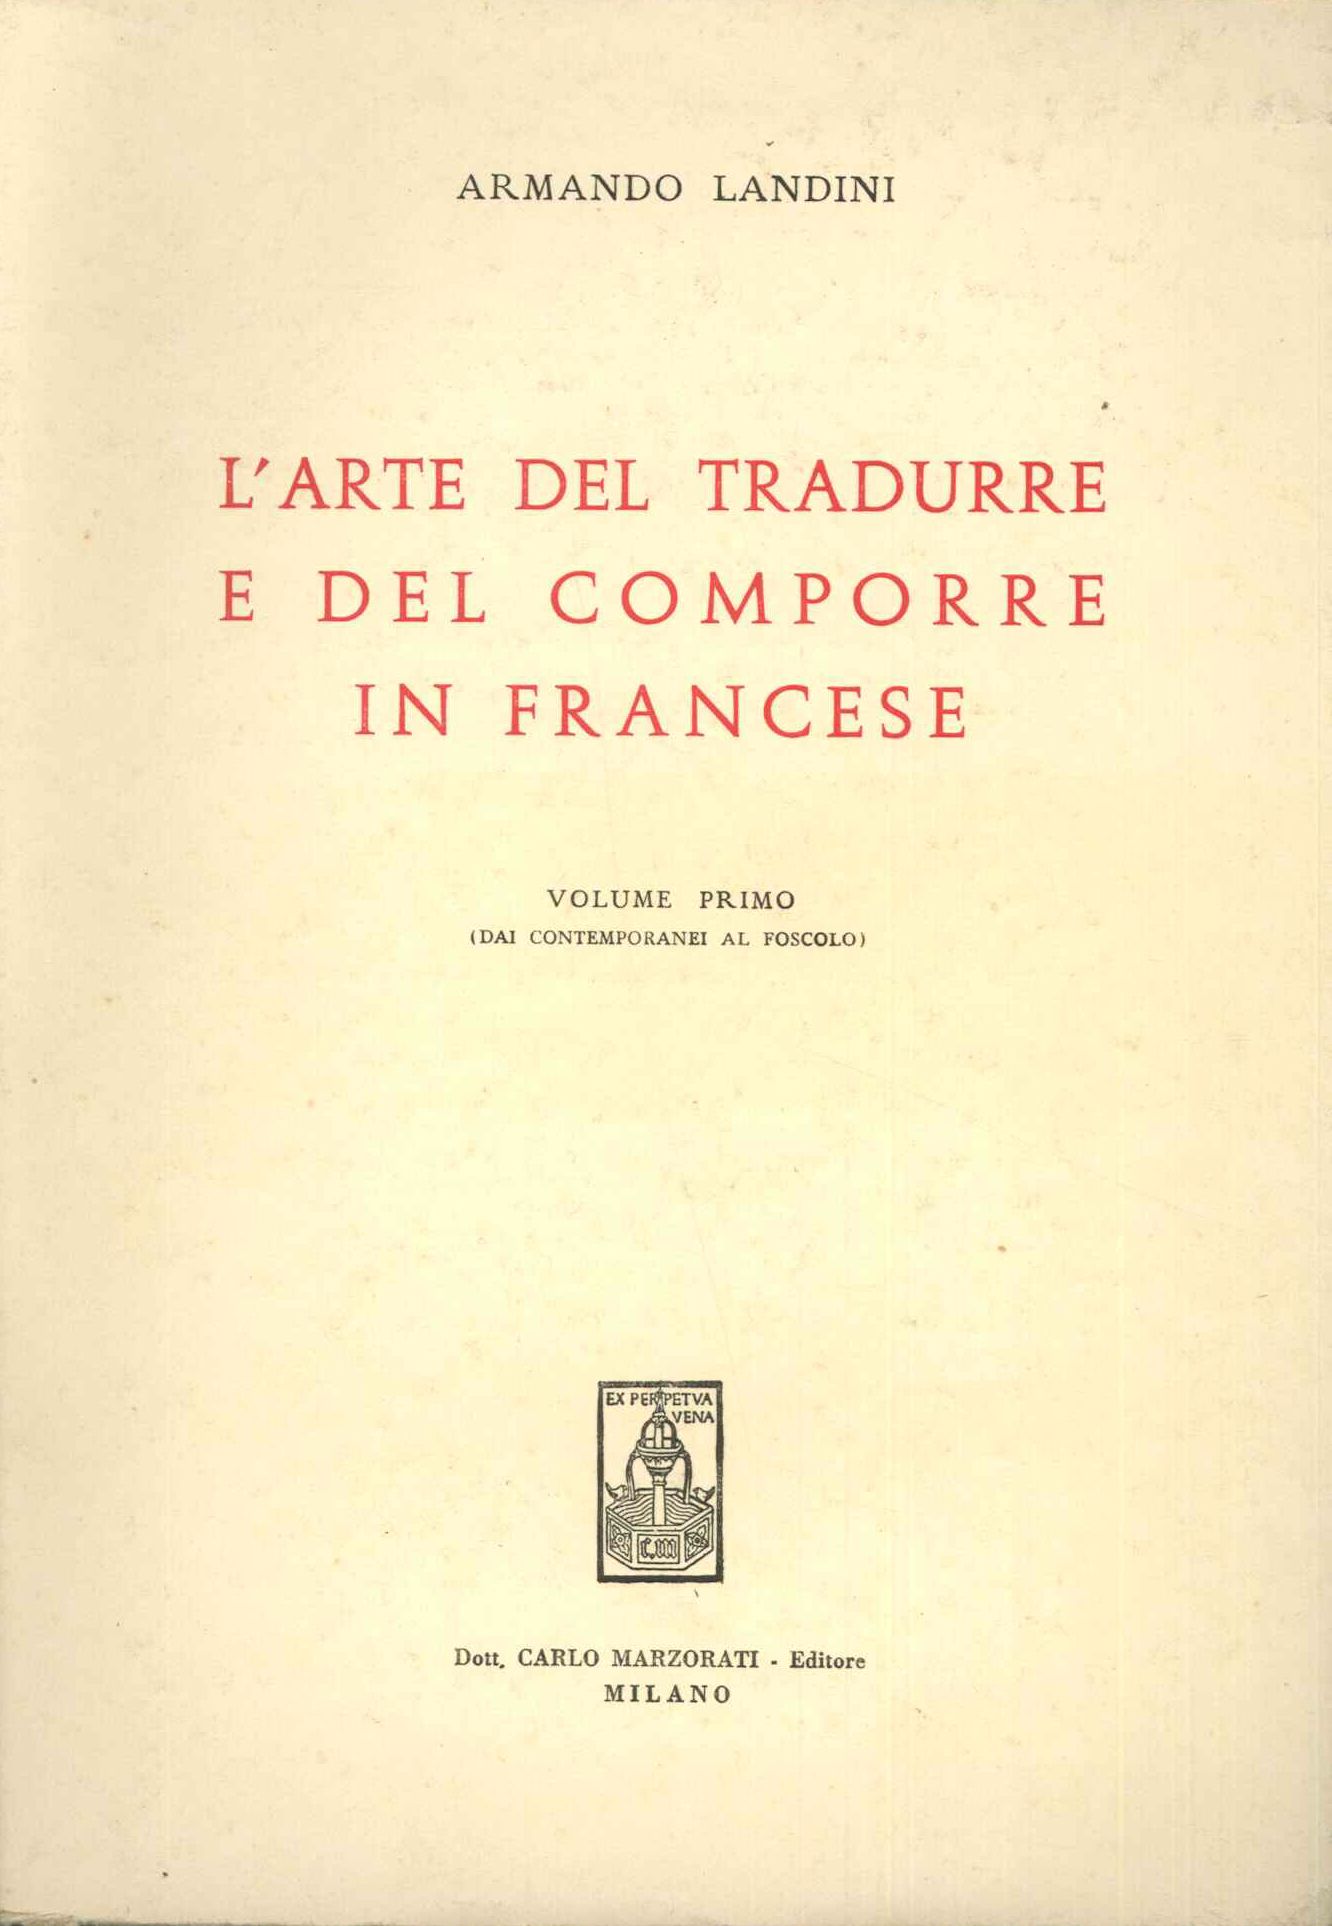 Arte del tradurre e del comporre in francese